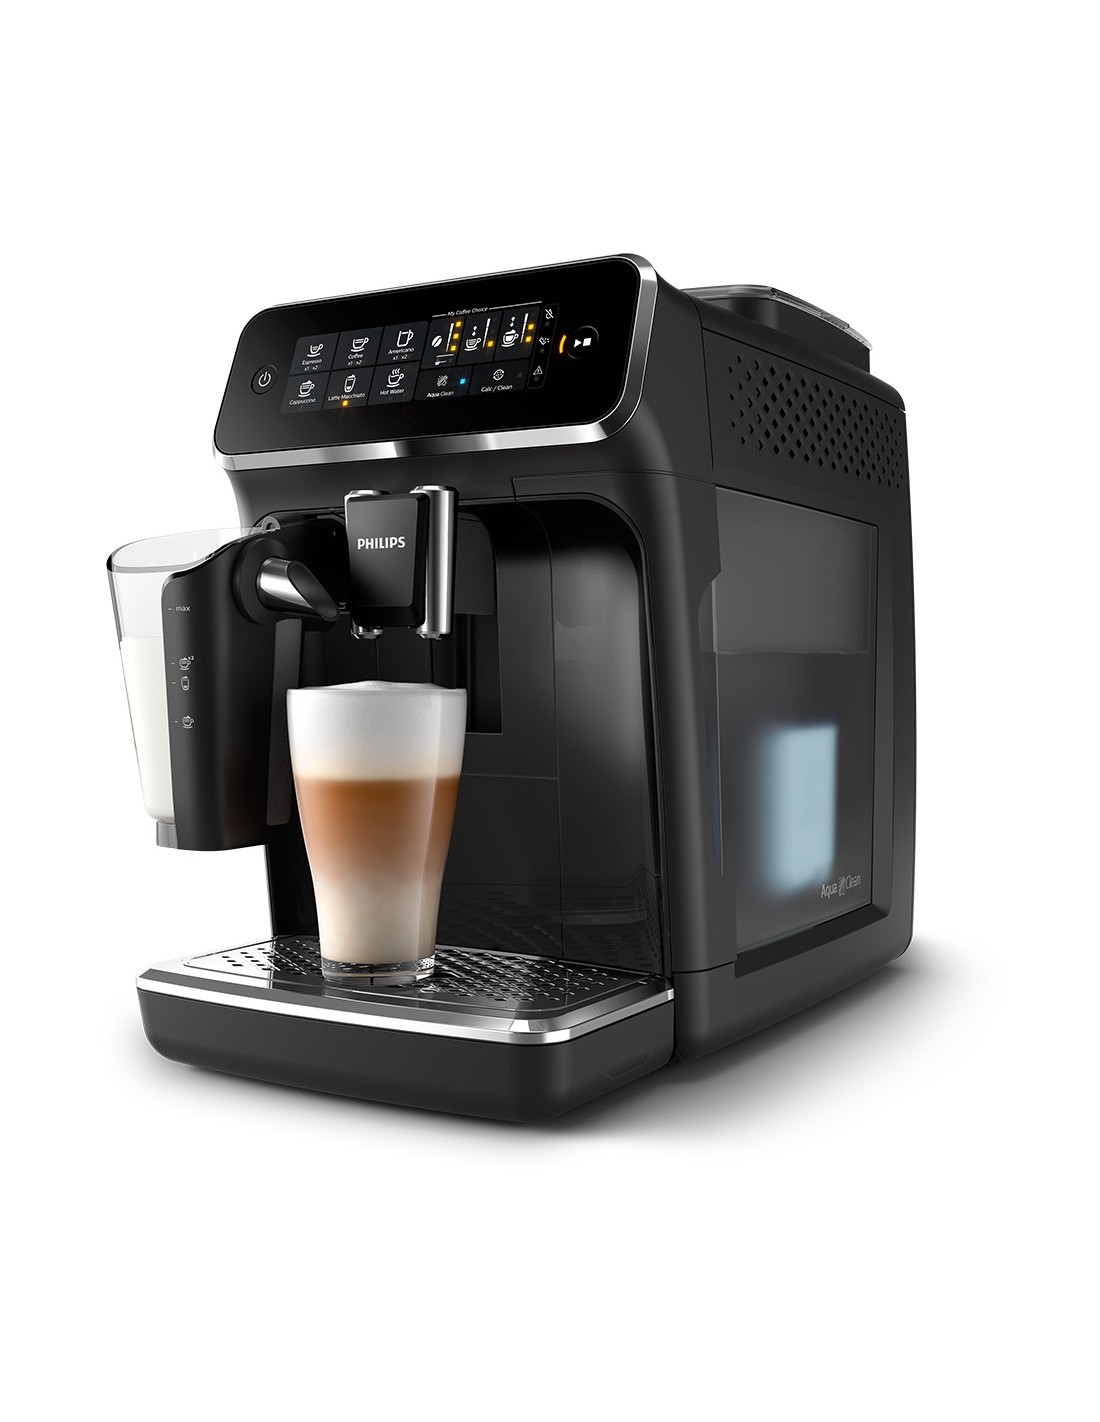 Philips tiene esta cafetera superautomática con un precio espectacular en  Mi Electro: ideal para los amantes del café latte